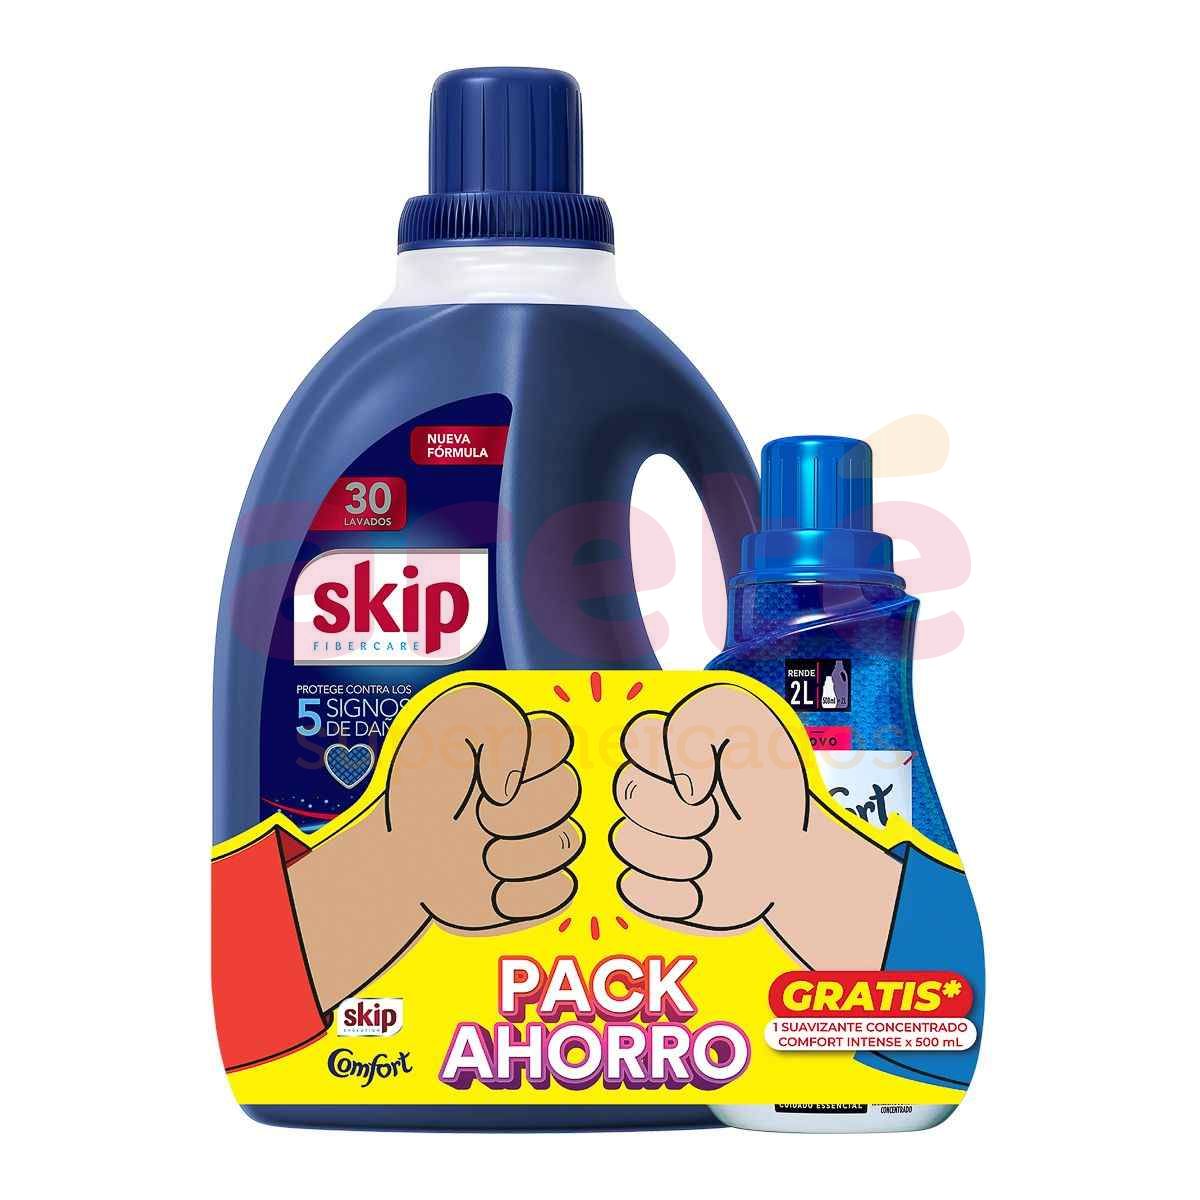 Detergente Líquido Ariel Pro Cuidado 3L